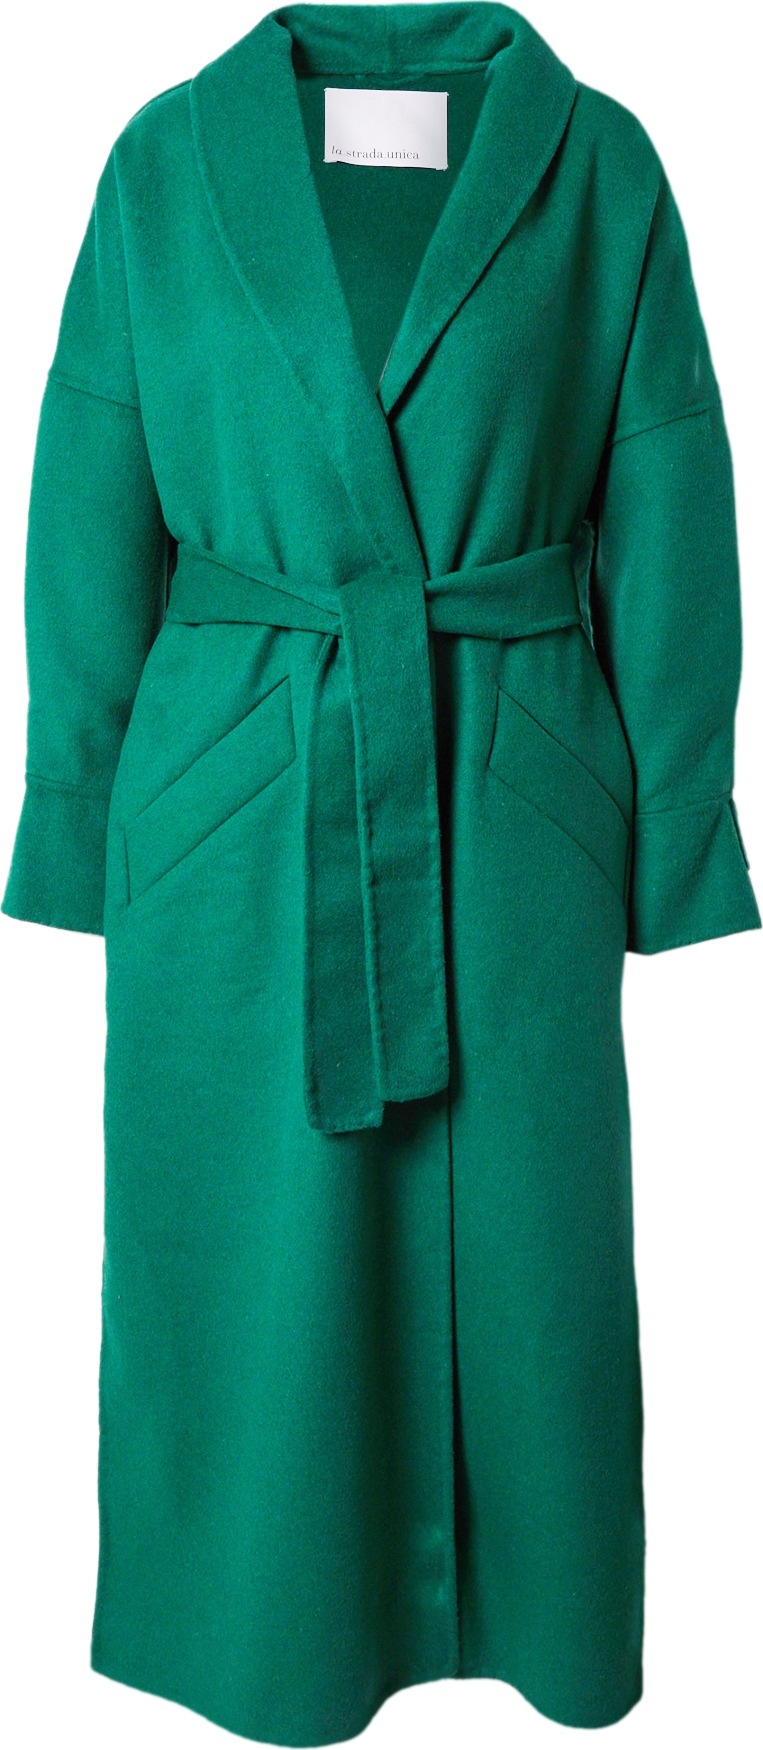 LA STRADA UNICA Přechodný kabát 'CALUSO' smaragdová